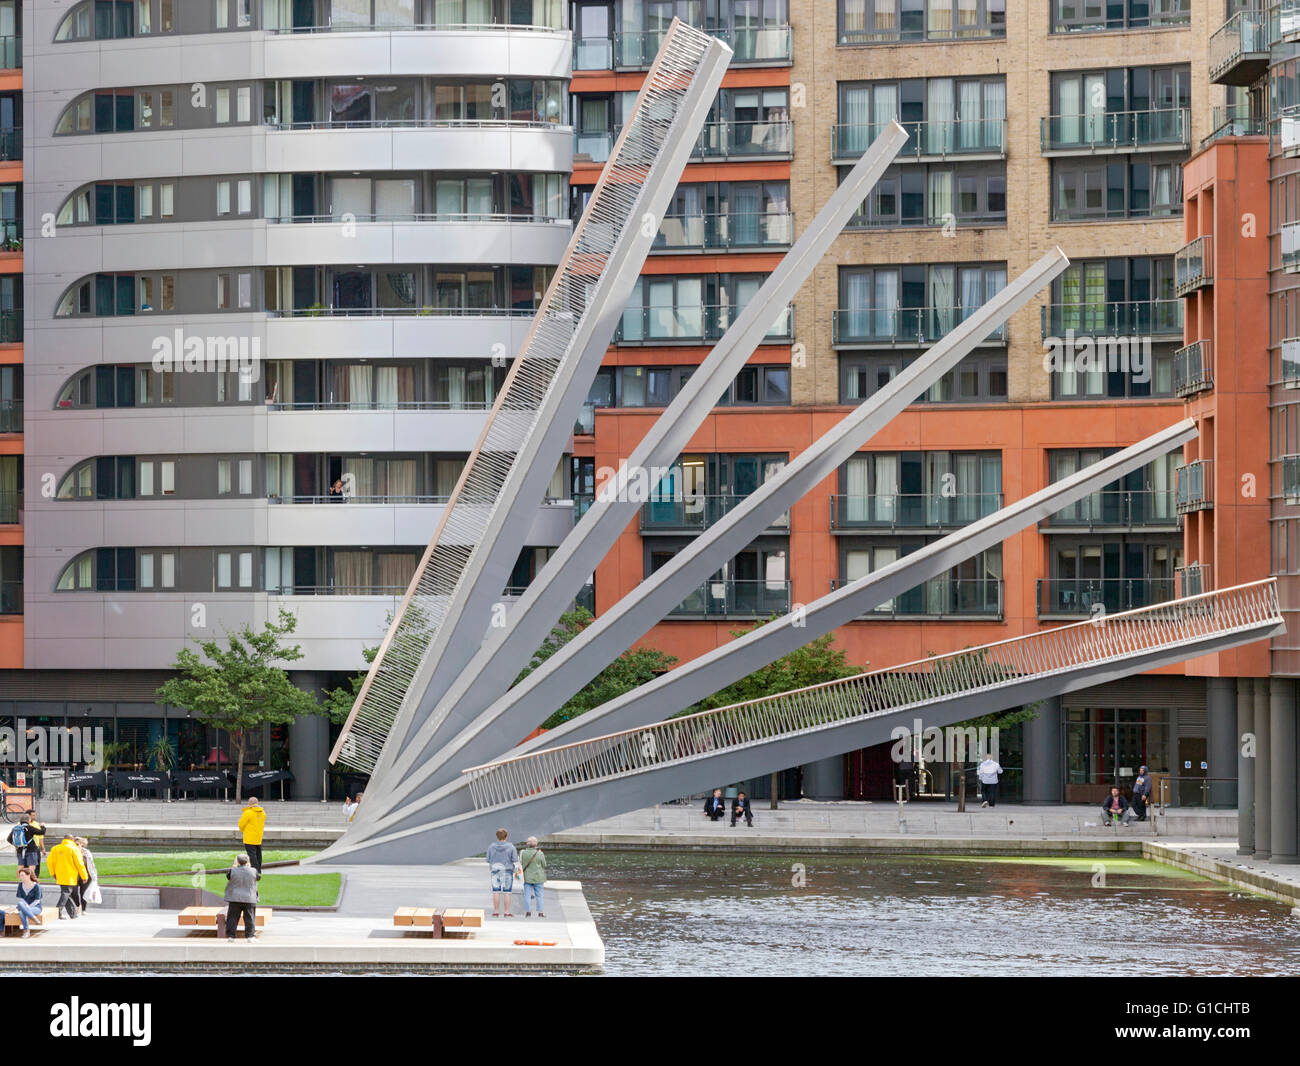 Ponte semi-sollevata con travi in acciaio in fan-come posizione. Merchant Square passerella, Londra, Regno Unito. Architetto: Knight Foto Stock